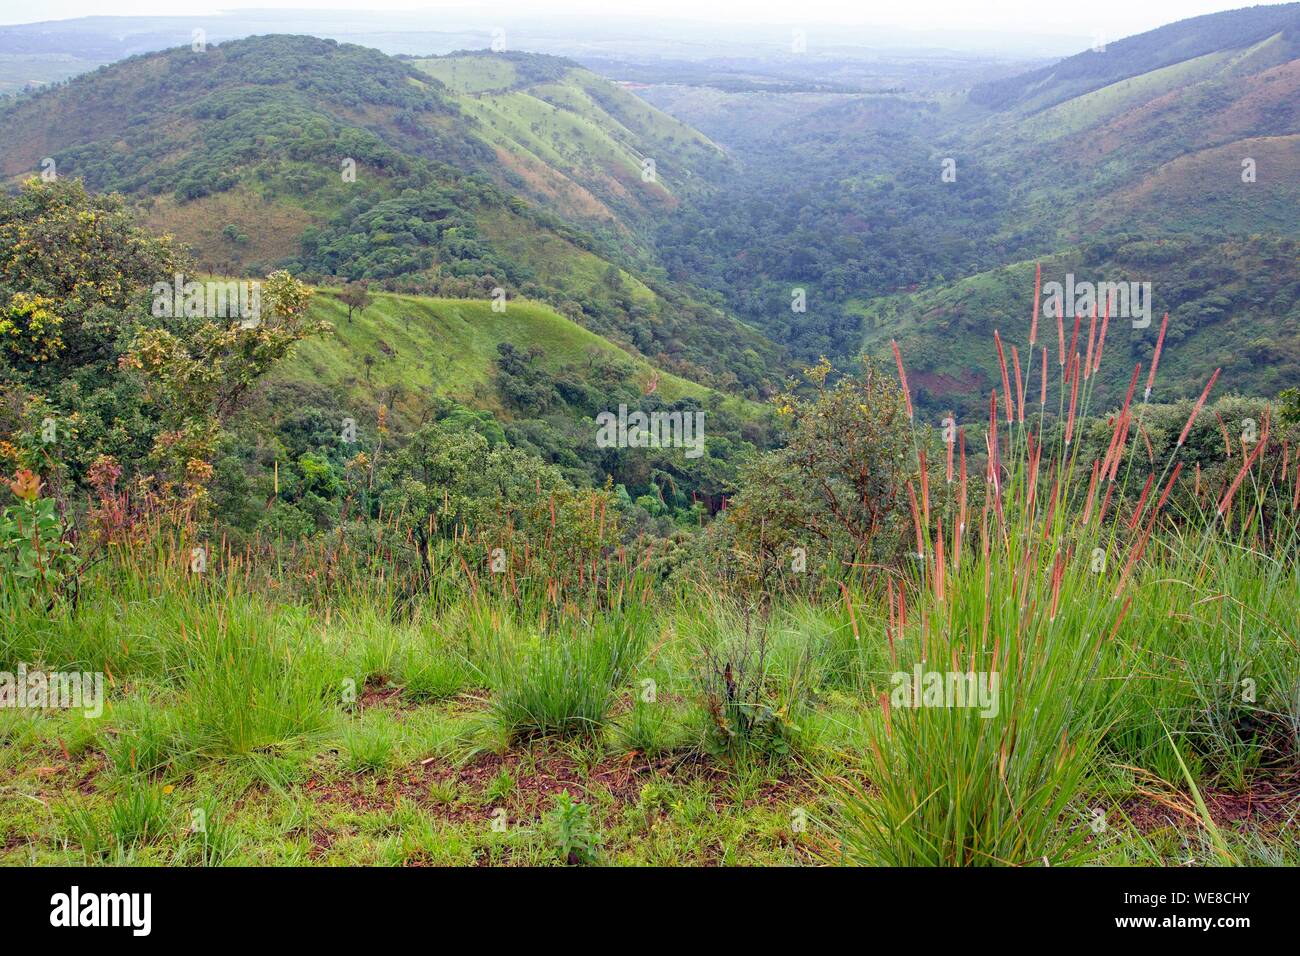 Burundi, Vyanda Nature Reserve in the bututsi Stock Photo